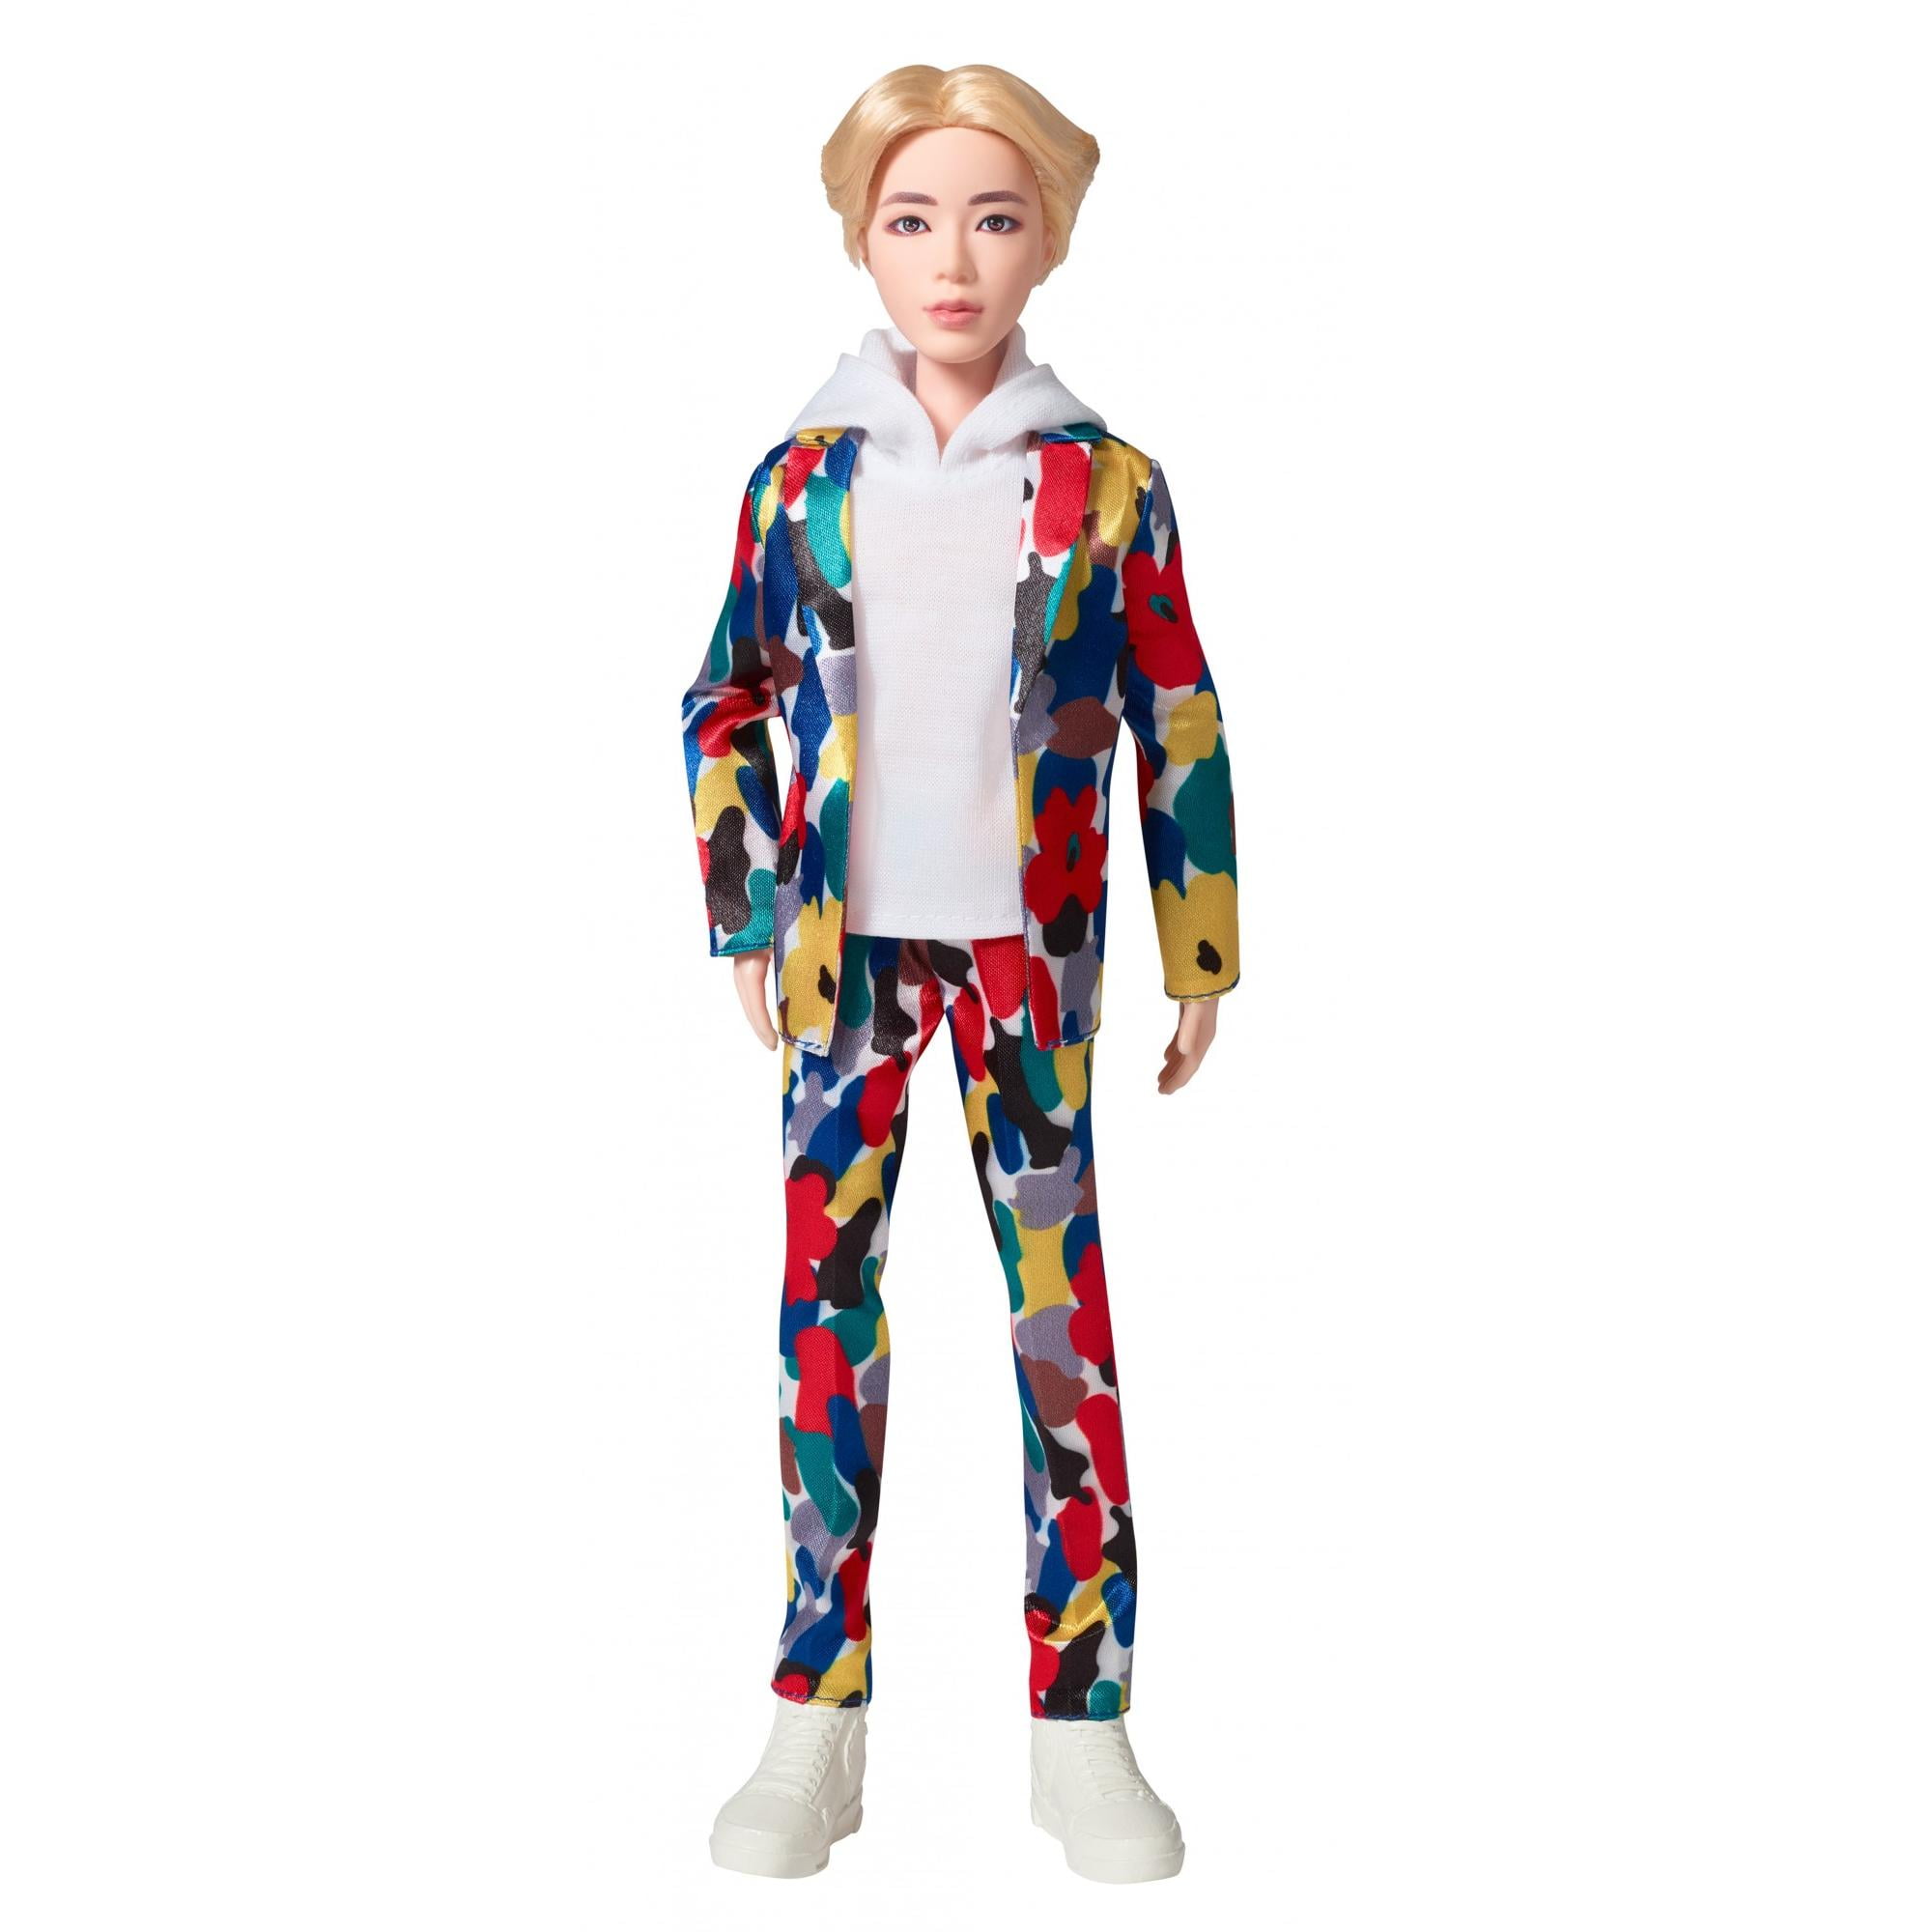 BTS Jin Idol Doll - Walmart.com 